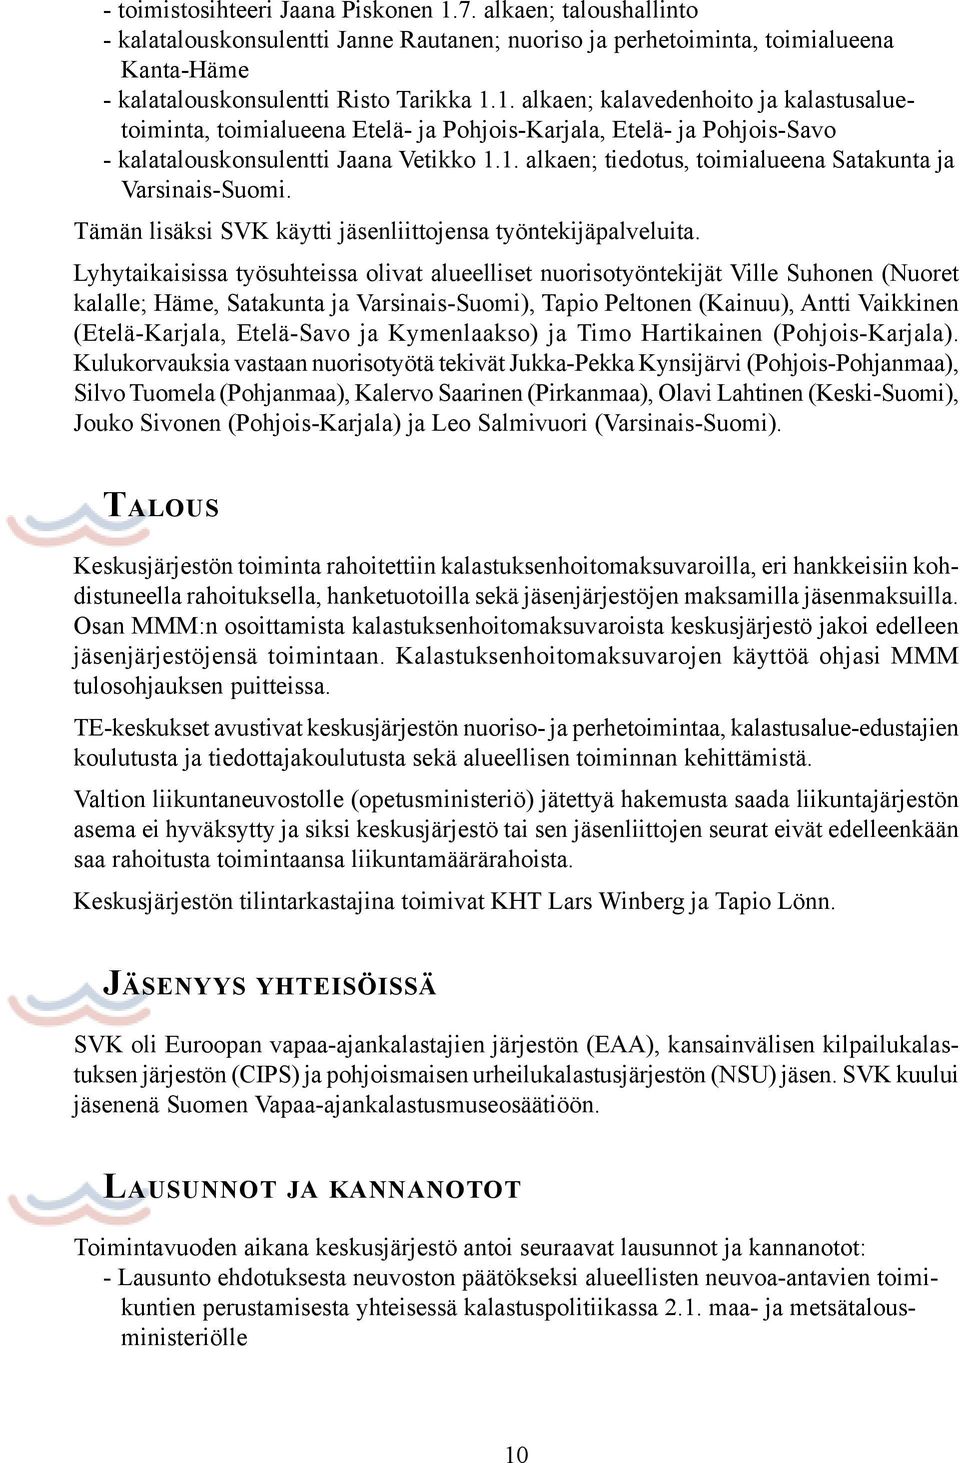 Lyhytaikaisissa työsuhteissa olivat alueelliset nuorisotyöntekijät Ville Suhonen (Nuoret kalalle; Häme, Satakunta ja Varsinais-Suomi), Tapio Peltonen (Kainuu), Antti Vaikkinen (Etelä-Karjala,